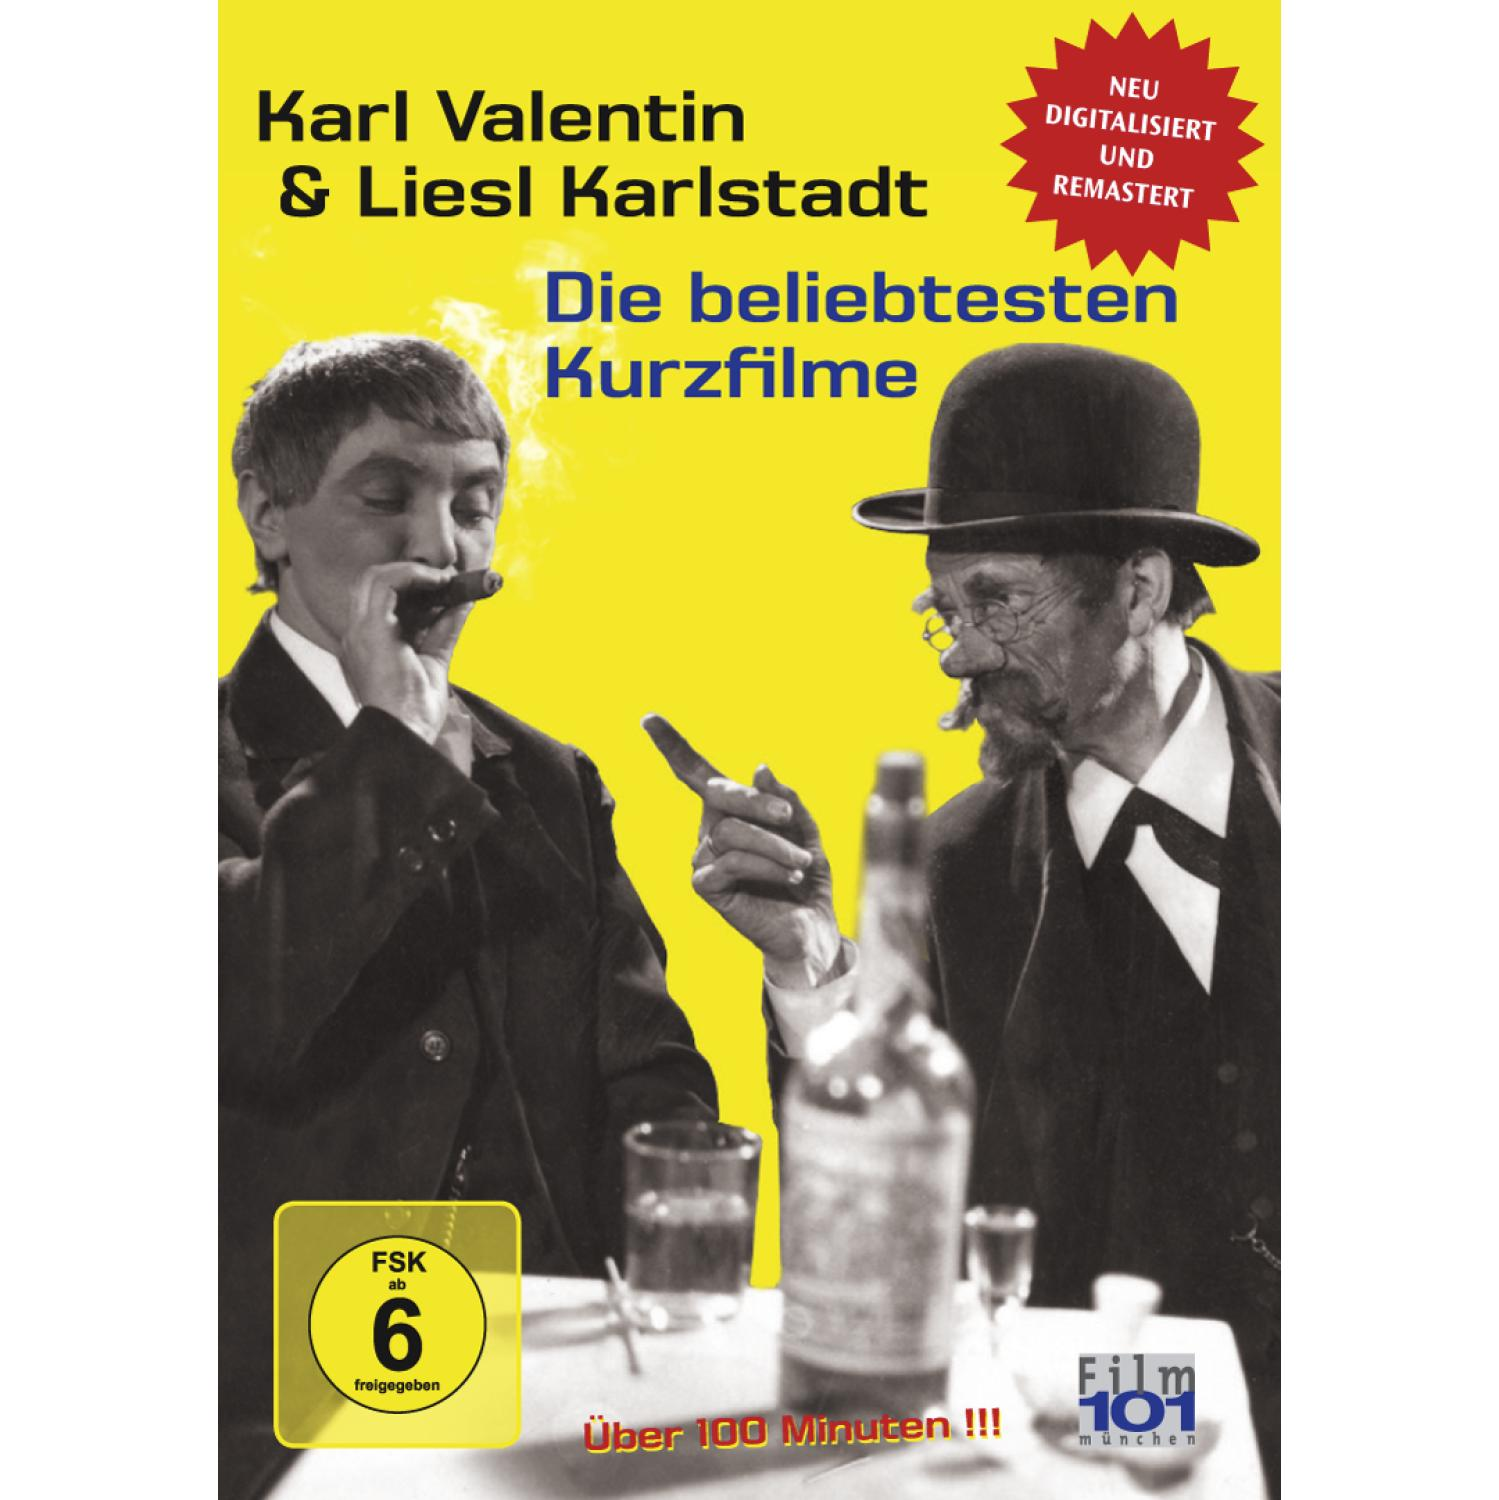 VALENTIN DVD LIESL DIE & BELIEBTESTEN KARL - KARLSTADT